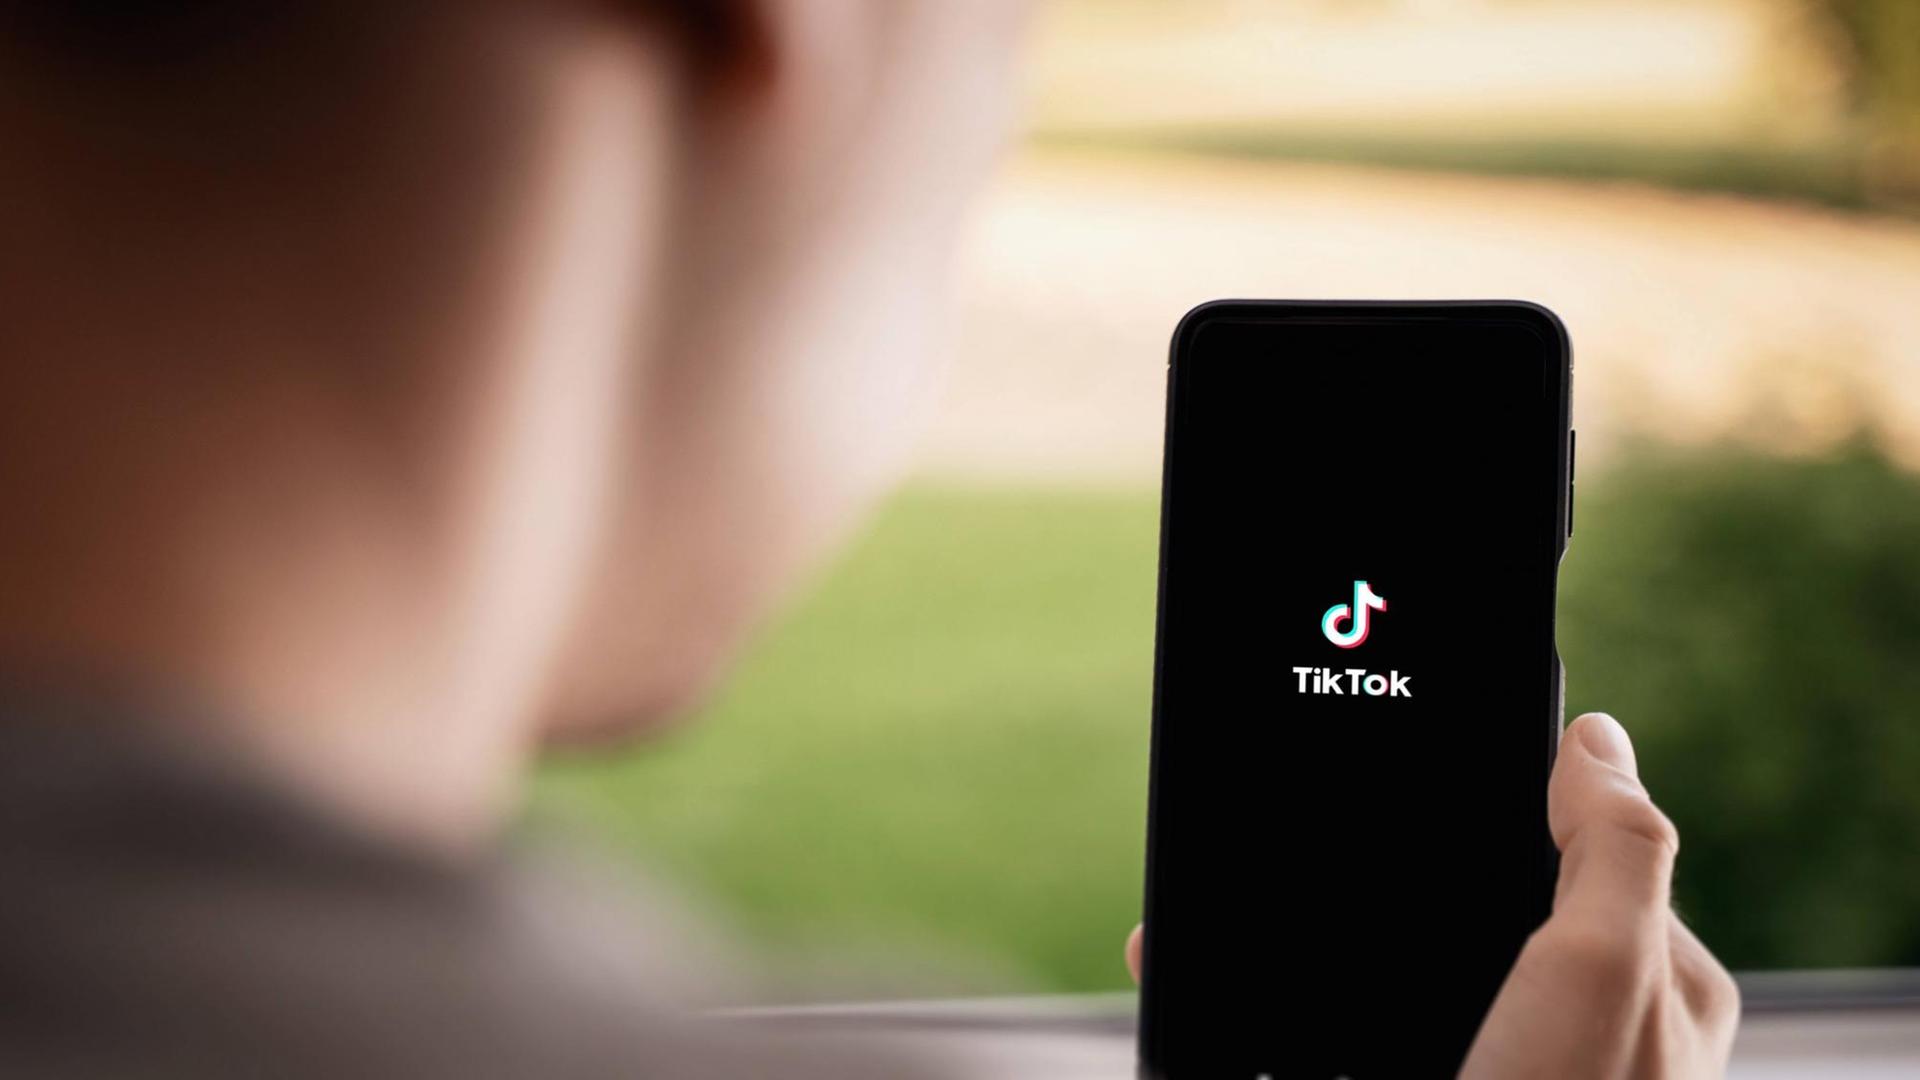 Ein junger Mensch hält ein Smartphone in der Hand, auf dem TikTok-App zu sehen ist.